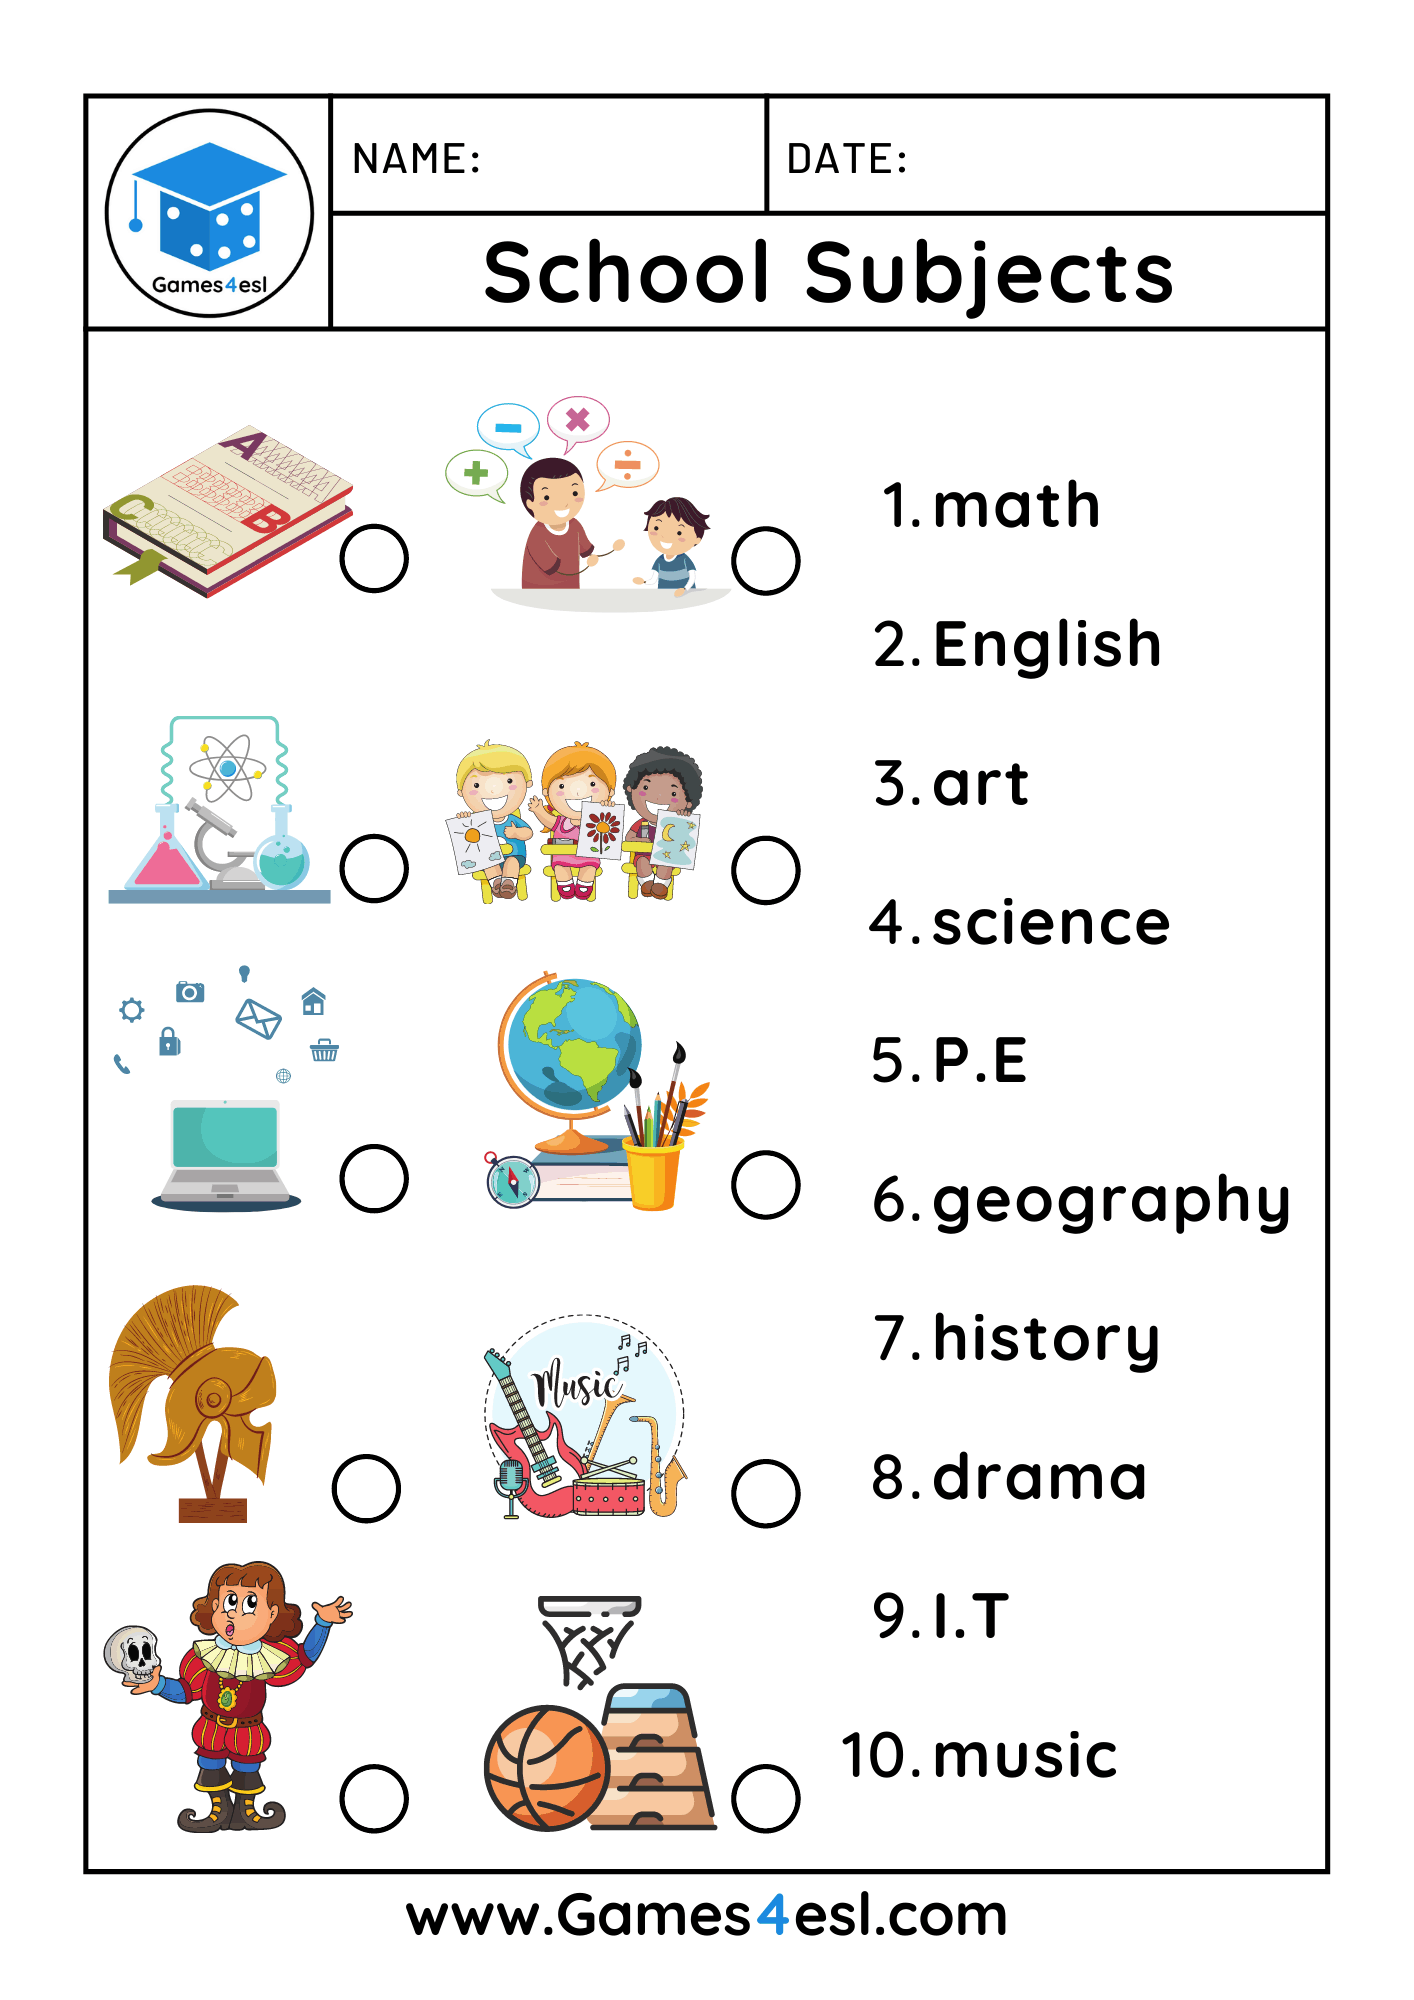 Prova de Inglês online worksheet